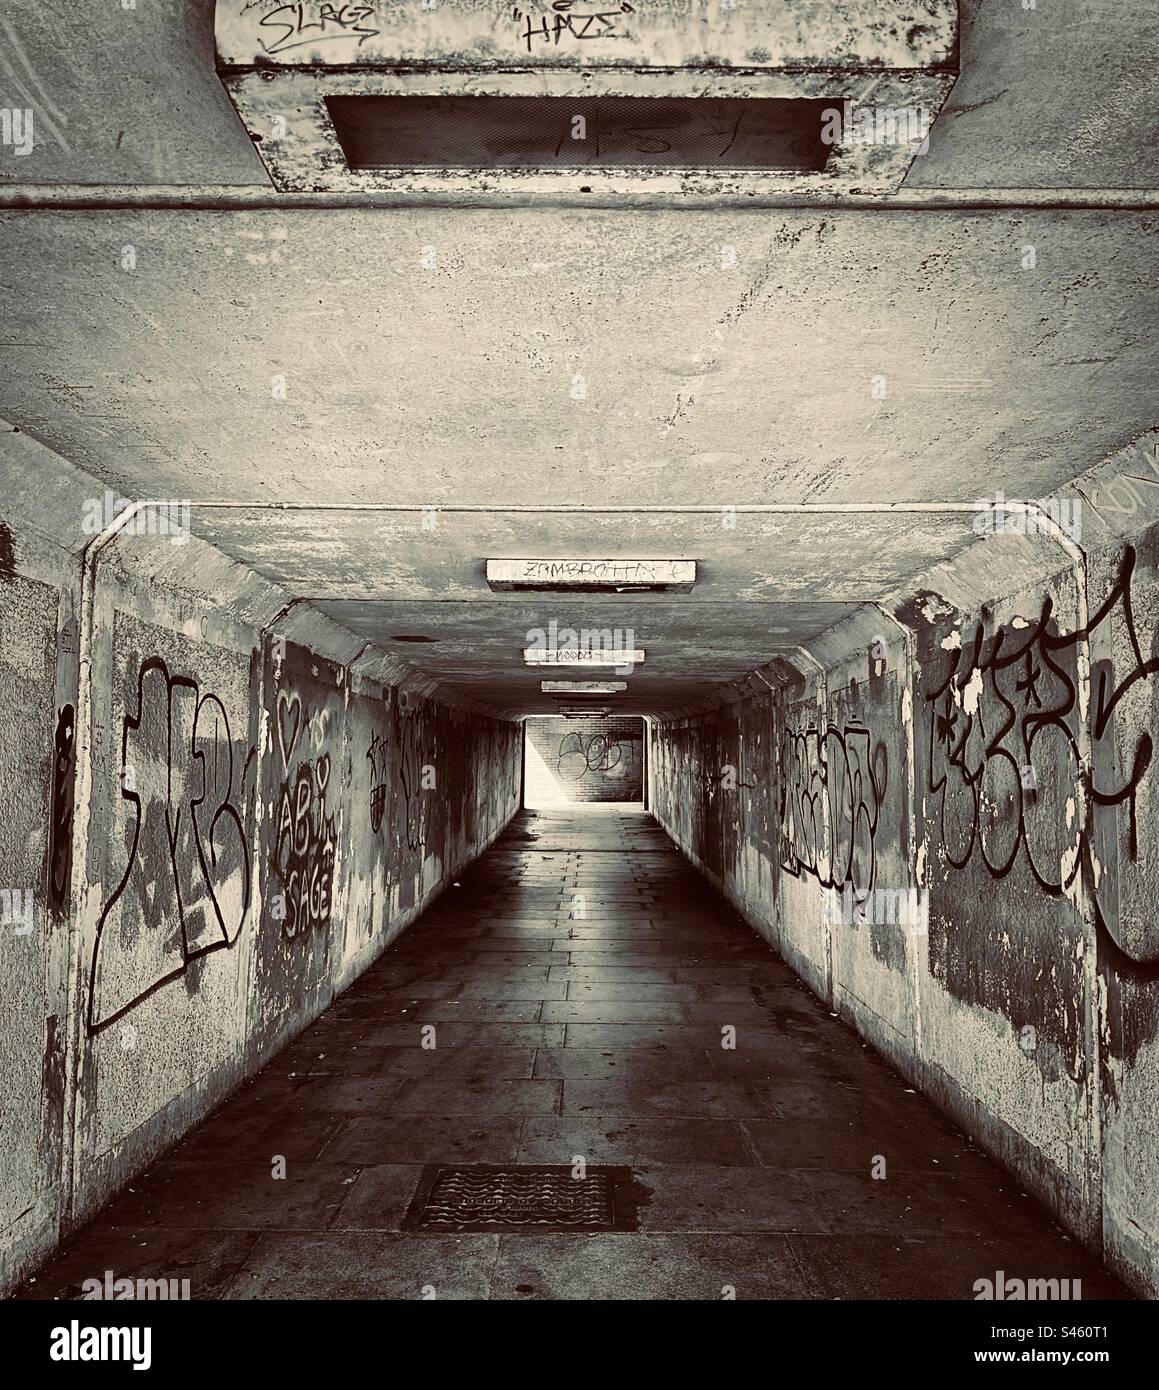 Una metropolitana sotterranea sembra poco invitante - buia, umida e malandata. Le pareti spruzzate con graffiti si trovano su entrambi i lati del passaggio. (Bianco e nero) Foto Stock